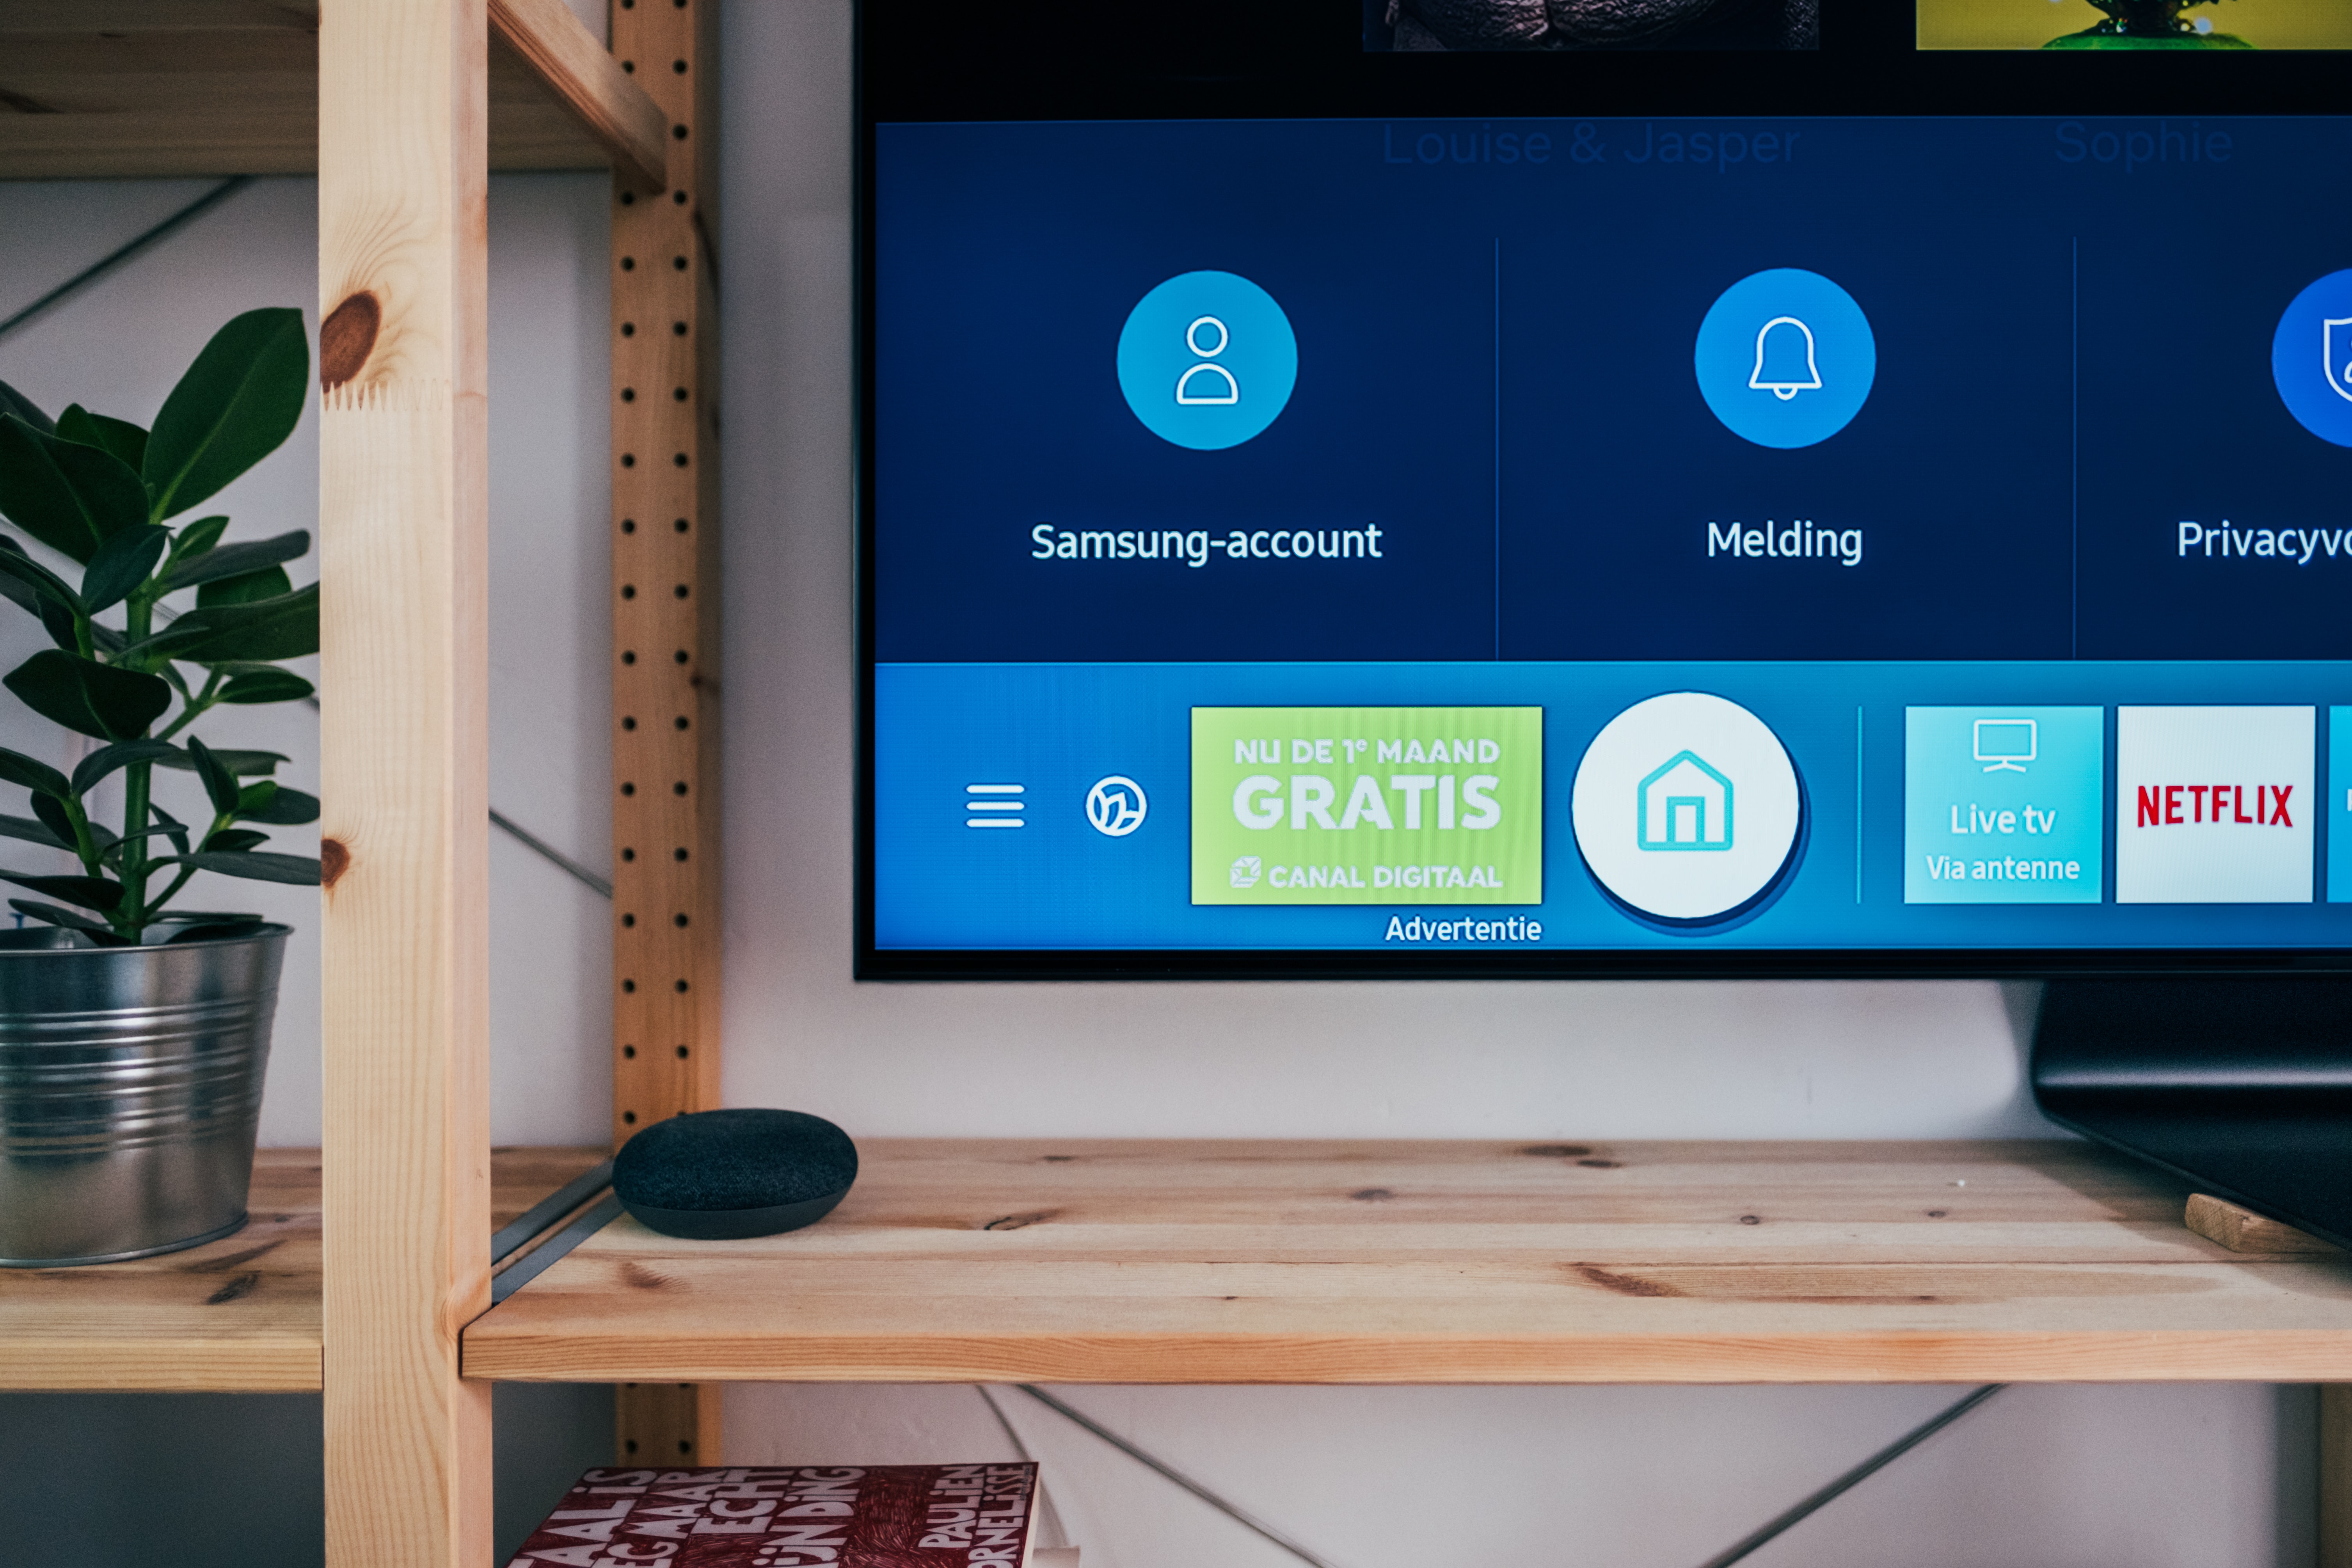 Las videollamadas son más fluidas, seguras y fáciles con tu televisor  Samsung – Samsung Newsroom Latinoamérica